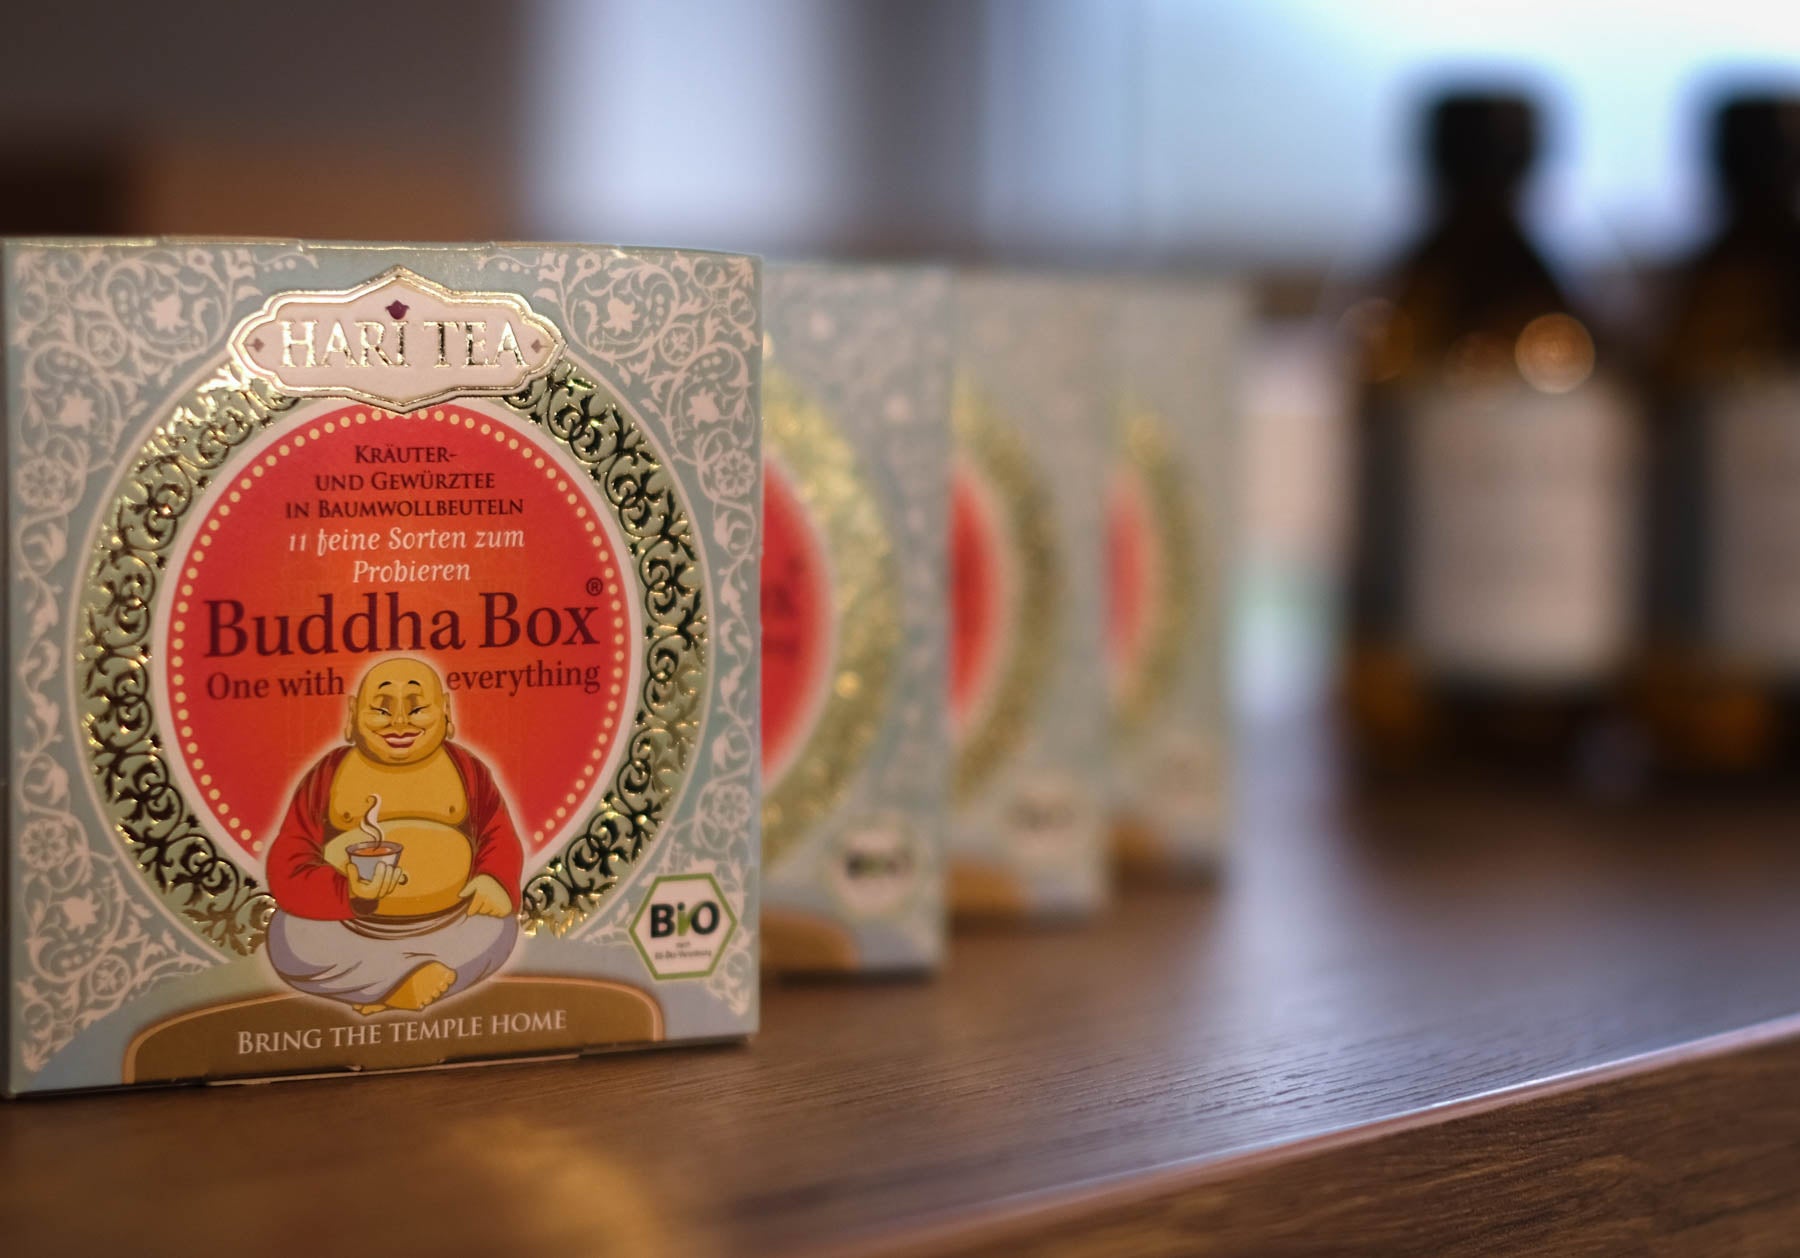 Tè Hari, I deliziosi tè Hari sono composti secondo gli antichi principi vedici